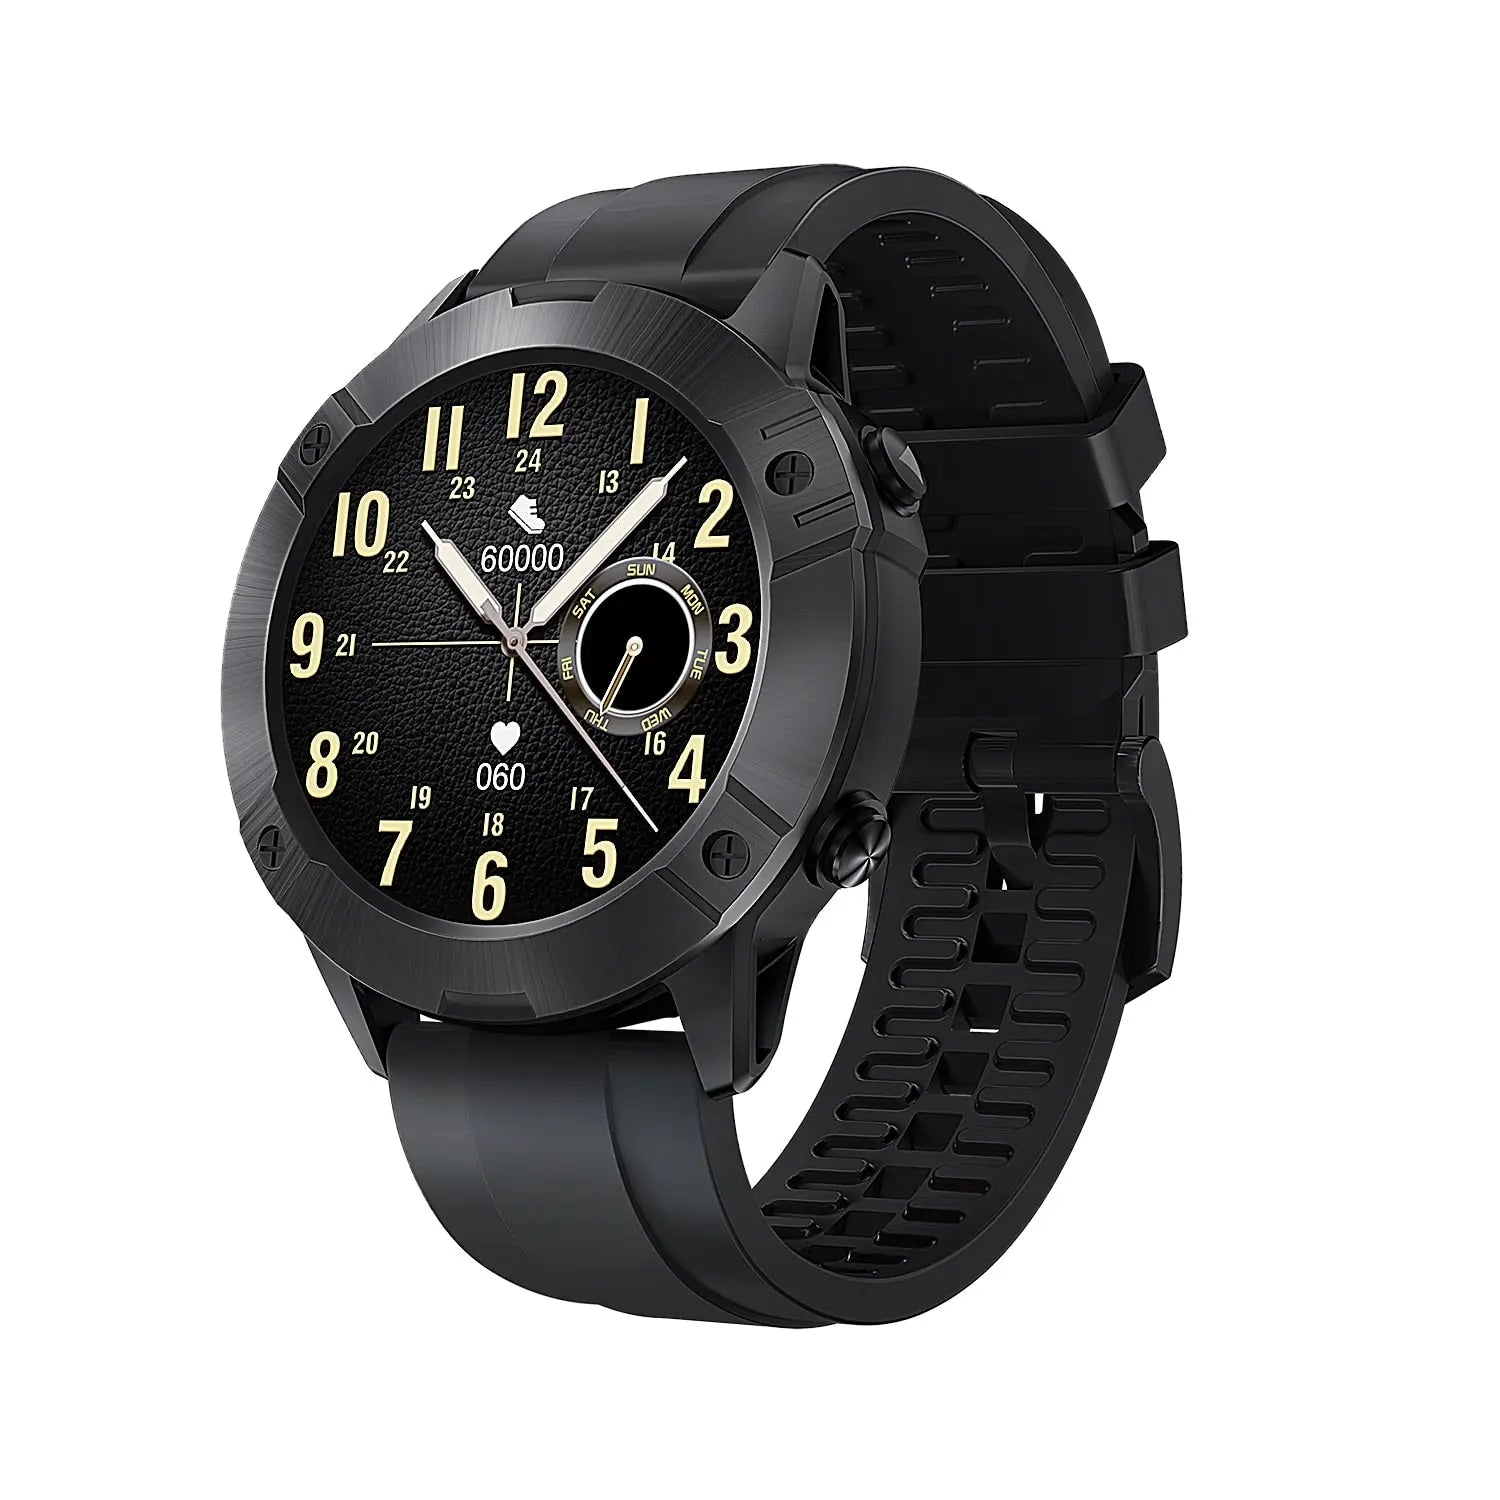 Cubot N1 Smart Watch 5ATM eprolo